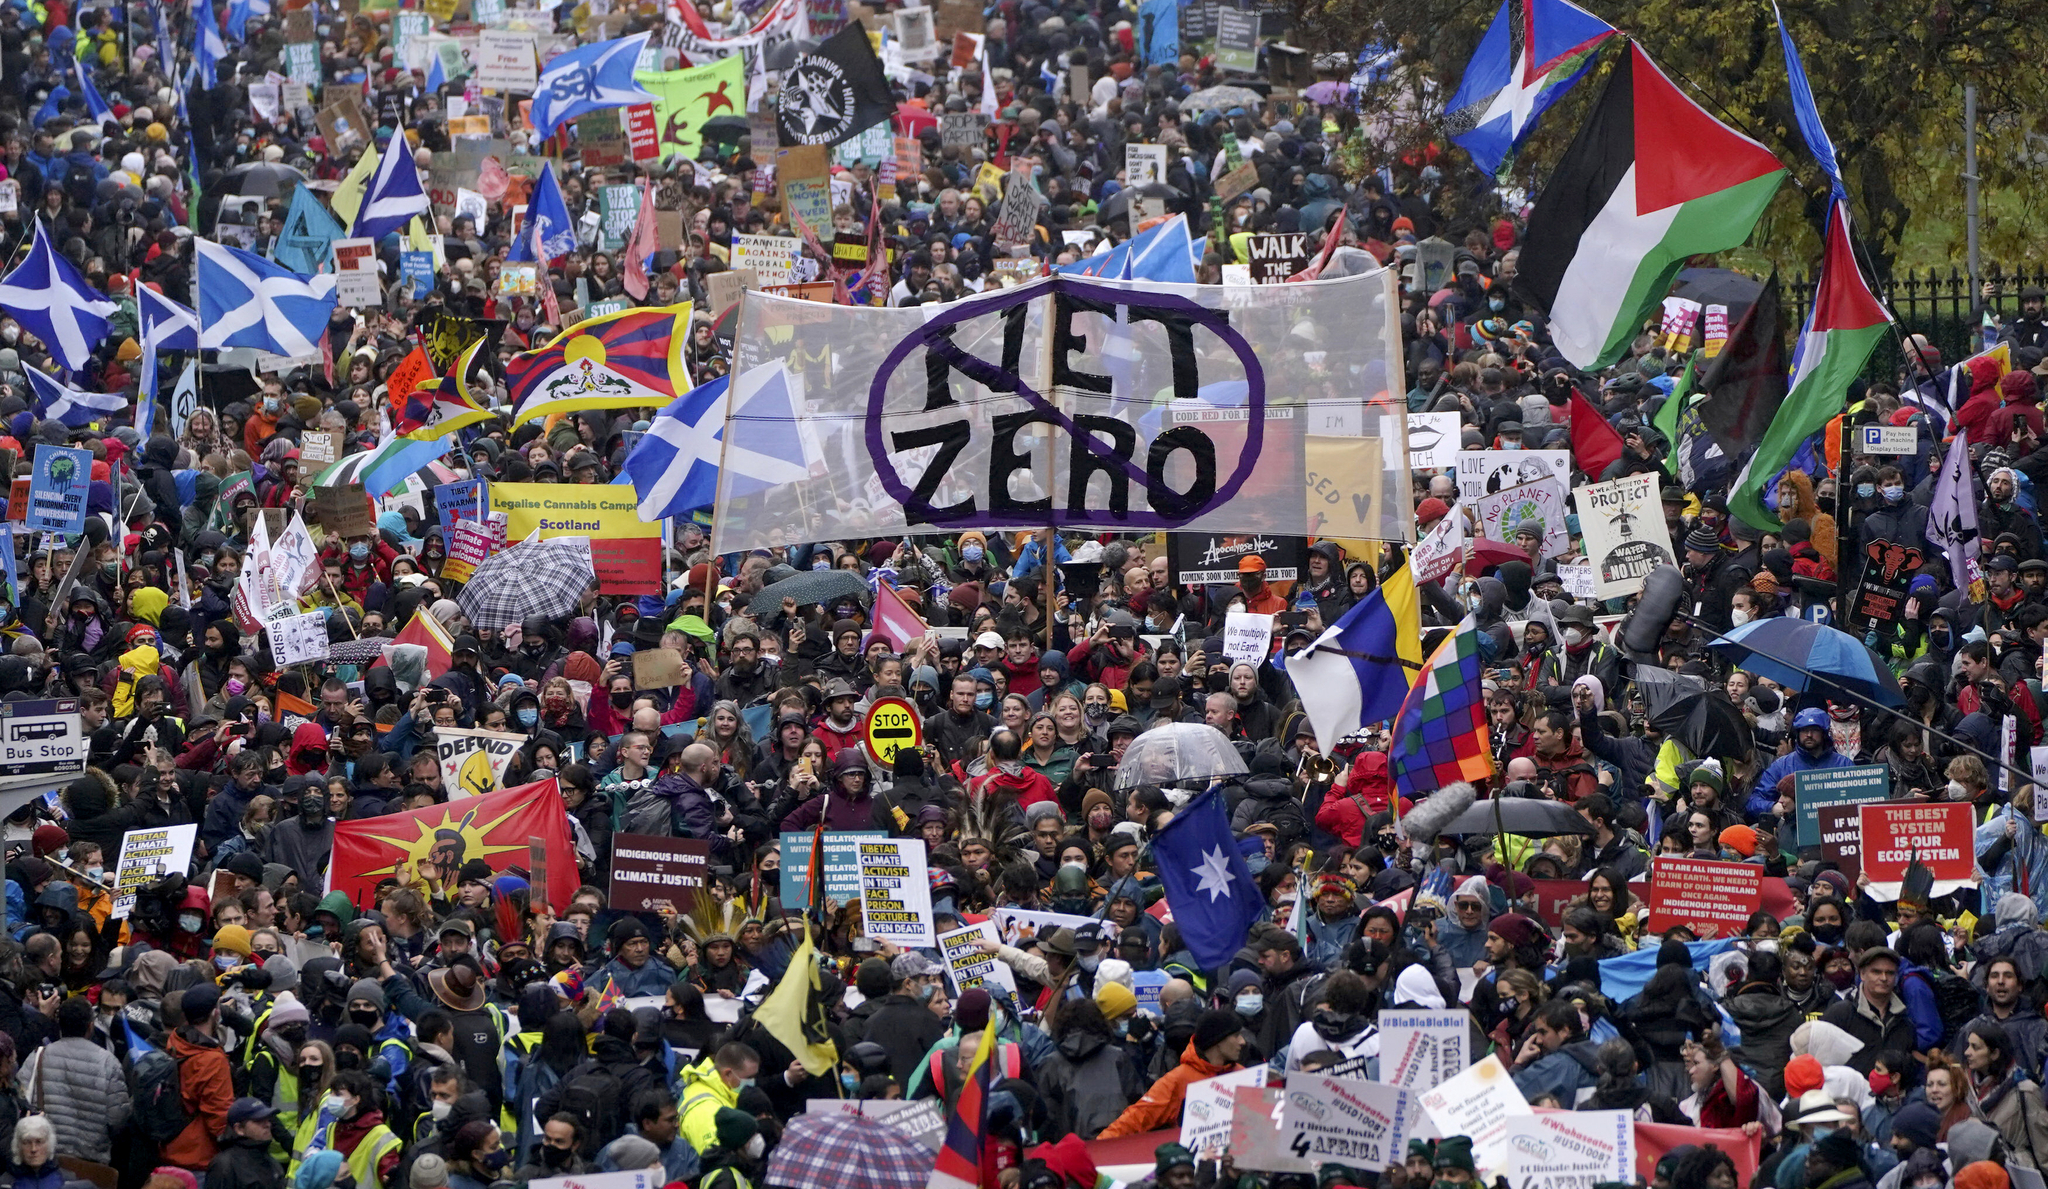 환경운동가들이 6일 COP26이 열리는 글래스고에서 '즉시 행동'을 요구하는 시위를 벌였다. AP=연합뉴스